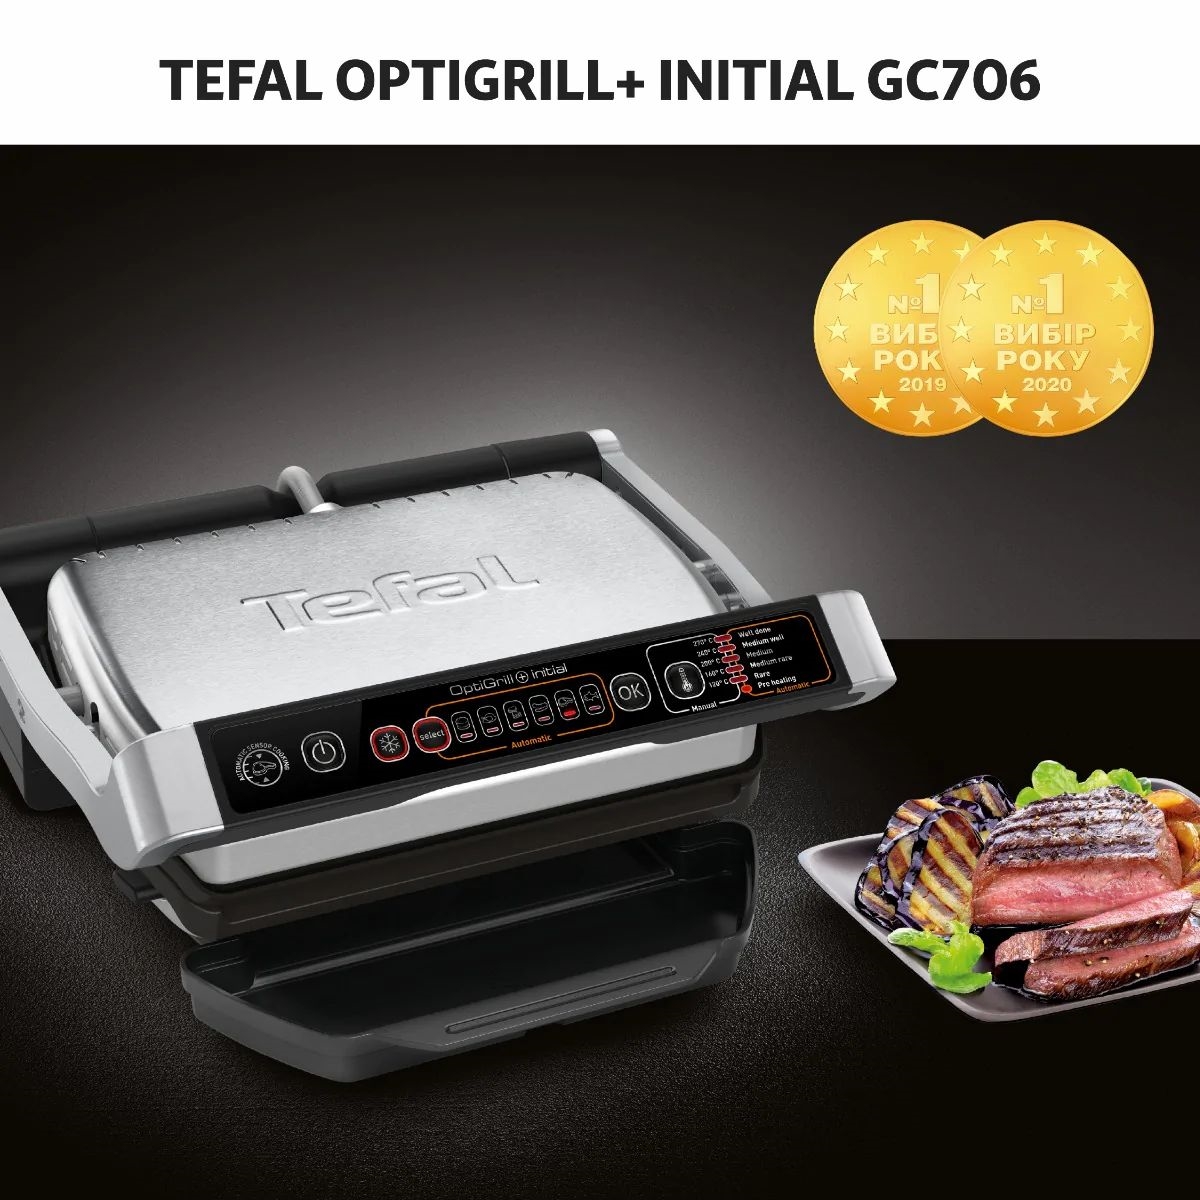 Електрогриль Tefal GC706D34 OptiGrill+ Initial характеристики - фотографія 7